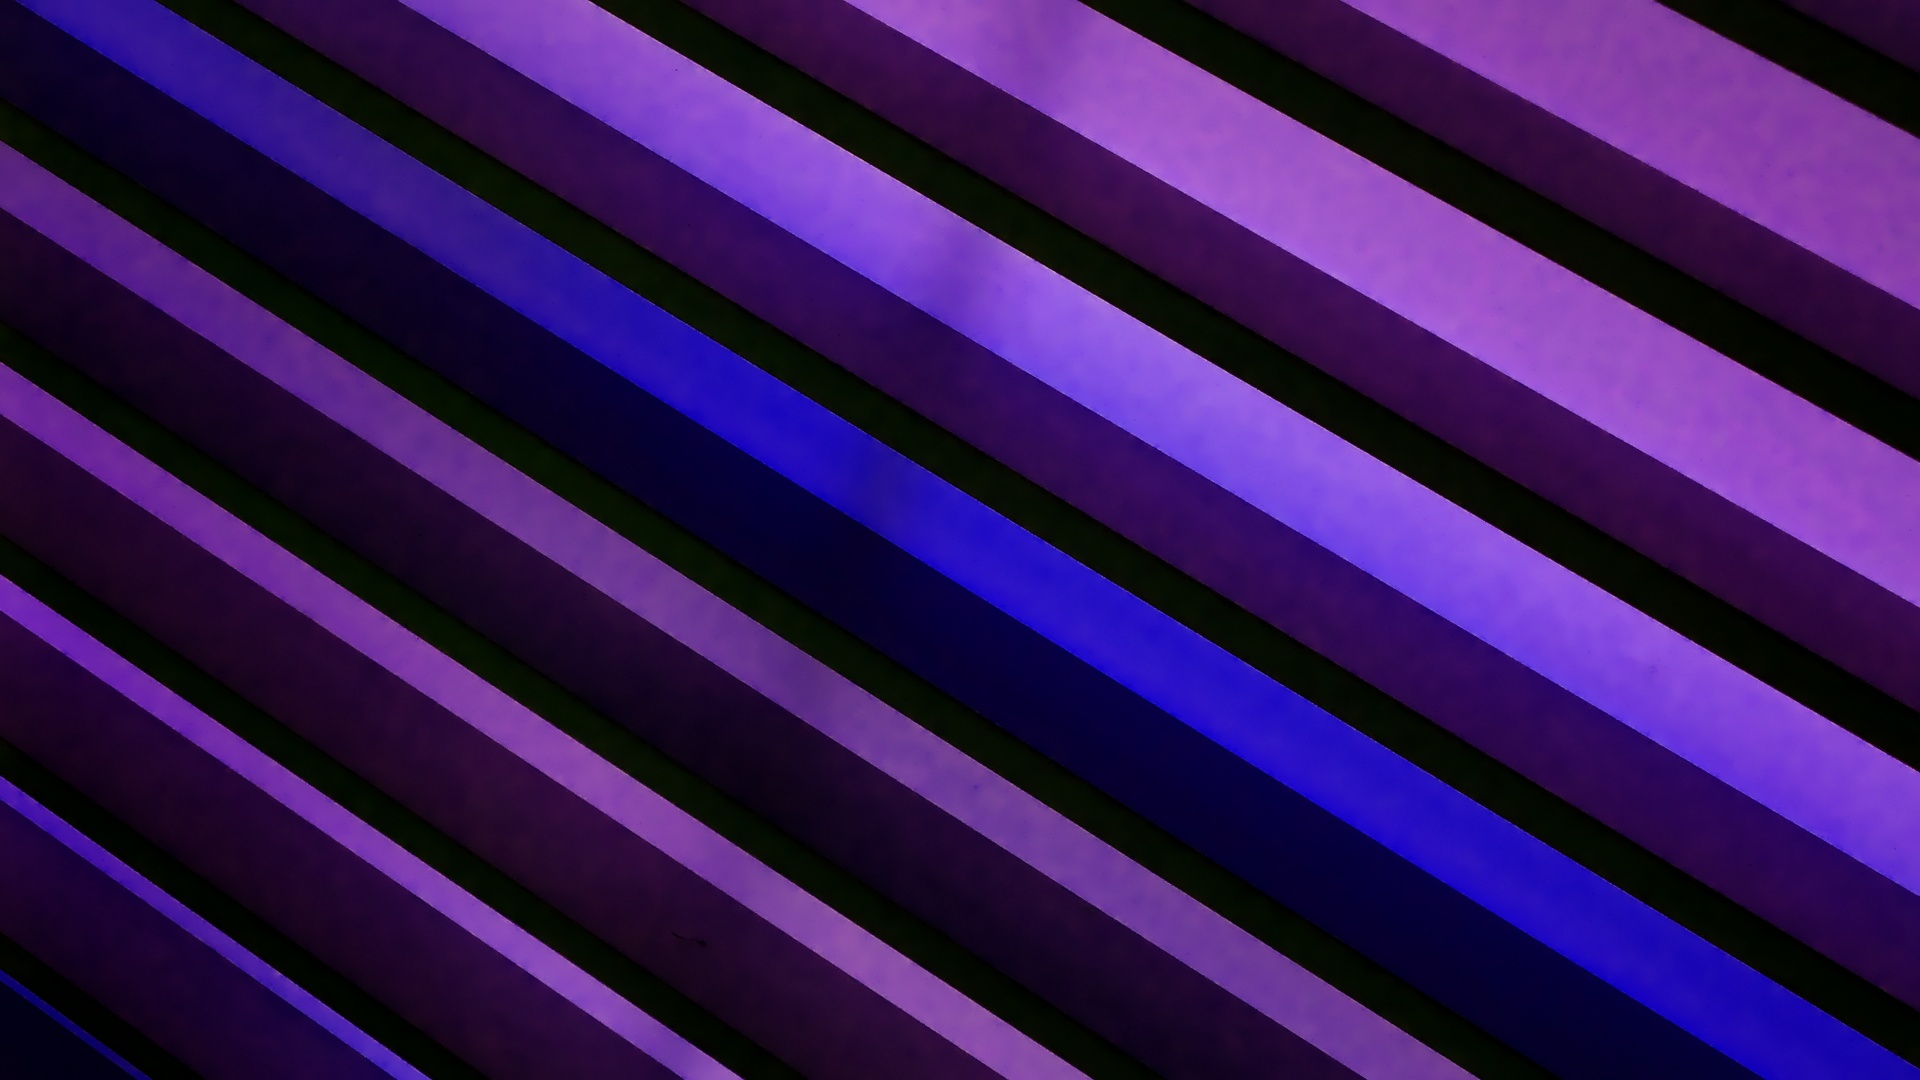 Violet texture